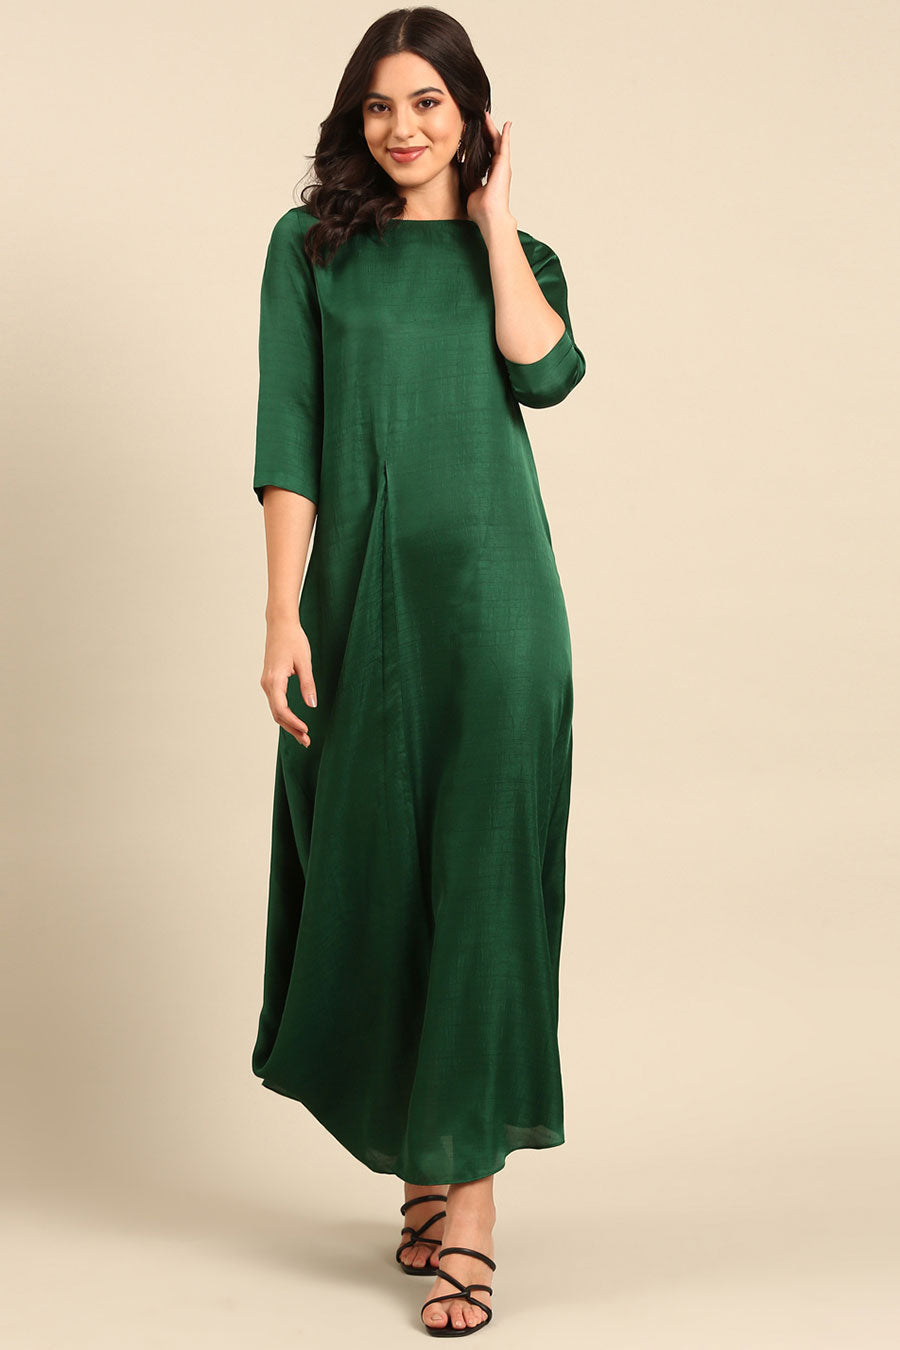 Green Long Dress